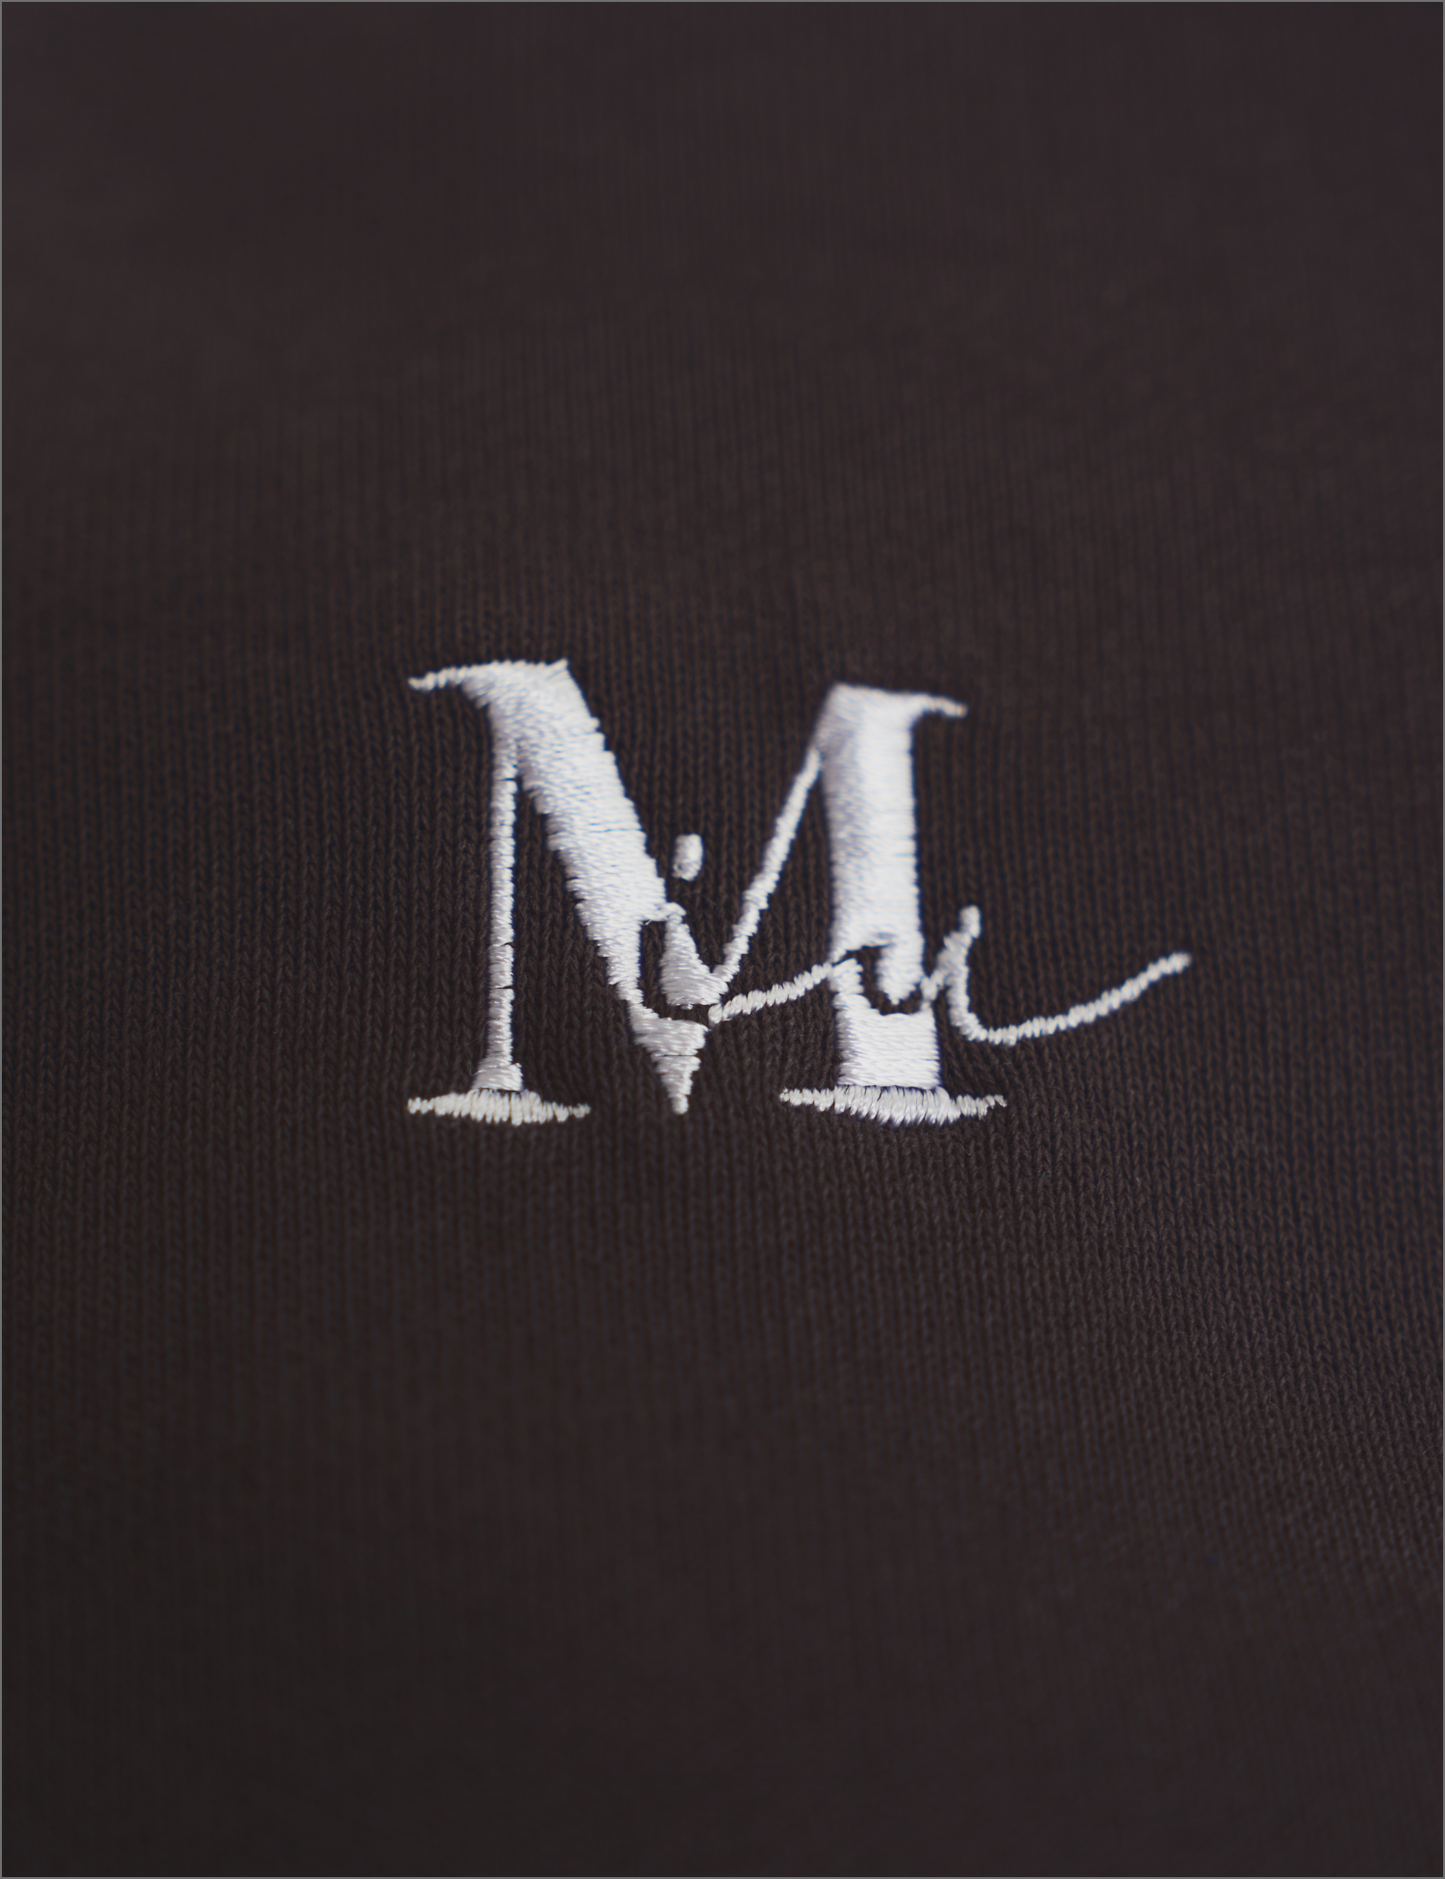 Monogram sweat shirts produce by miu